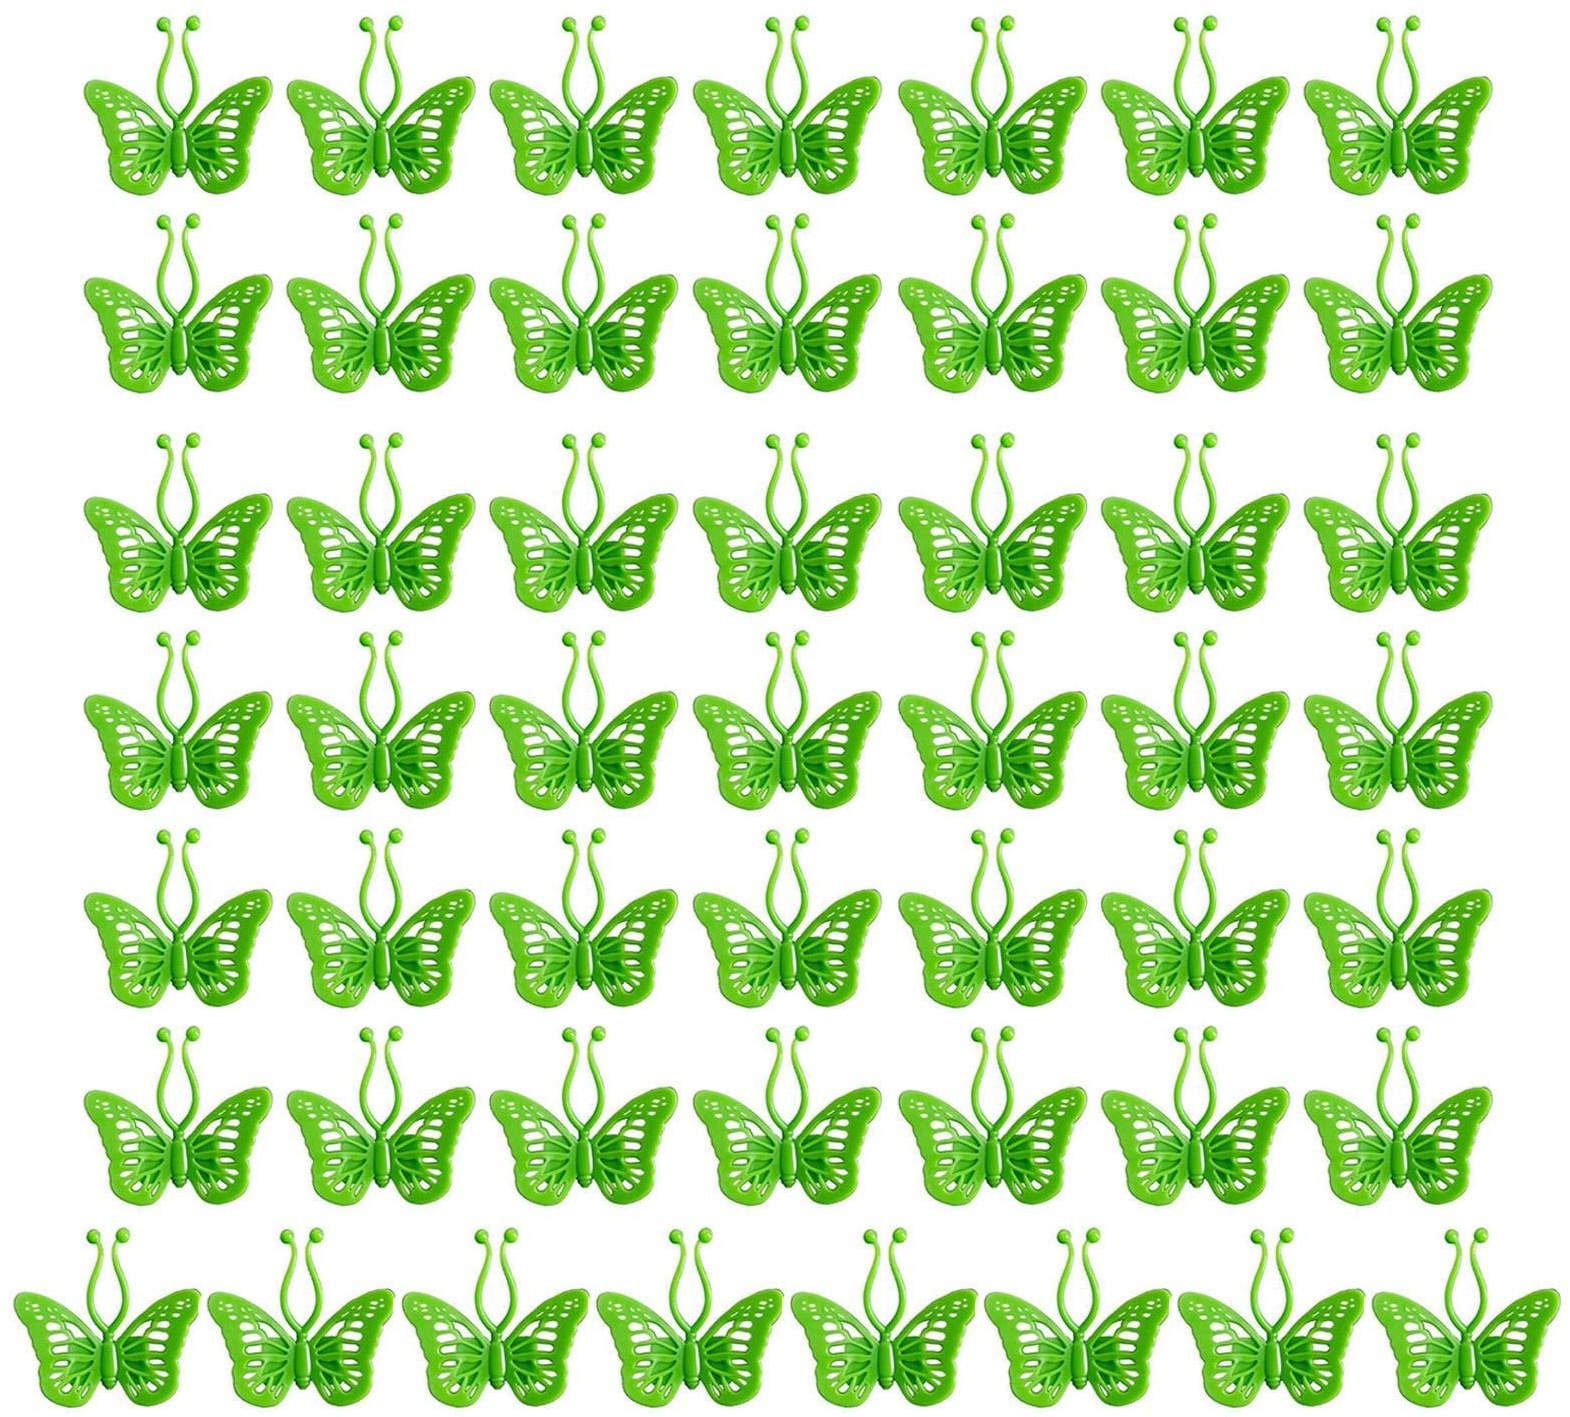 Pisamhid Selbstklebende Pflanzen-Wandklammern | 50 Stück Schmetterlingsform Pflanze Kletterwand Befestigung Clip Haken,Green Pack Plant Support Clips Tomatenclips, Blumen und Reben aufrecht wachsend